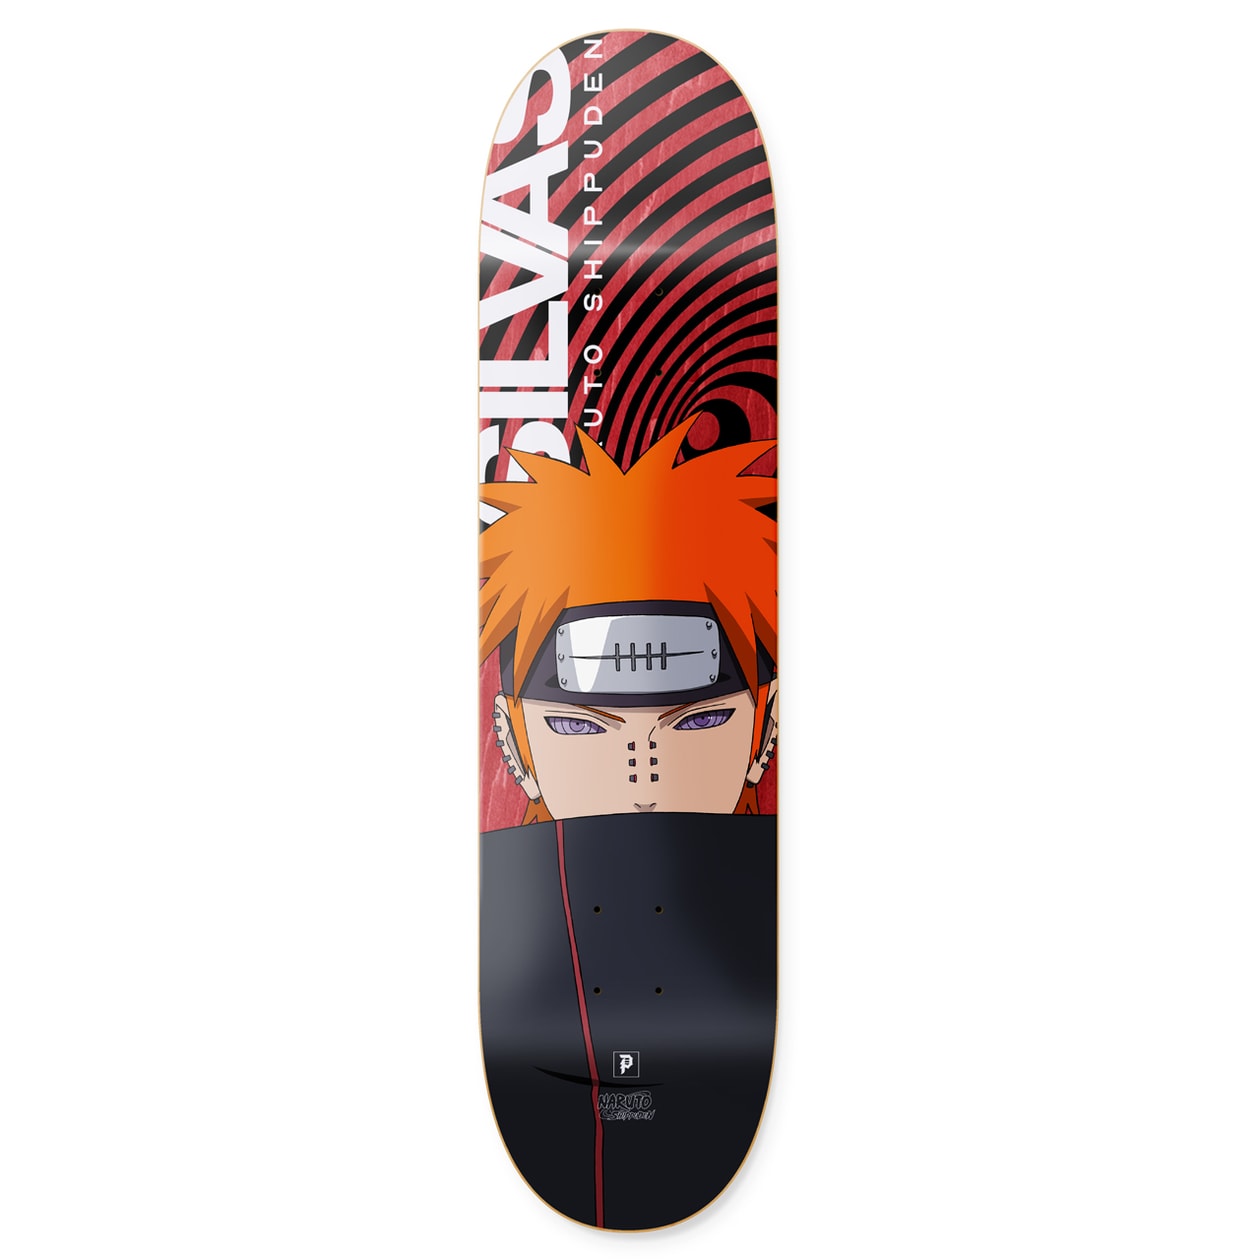 《Naruto》x Primitive Skateboarding 第二回聯乘系列發佈